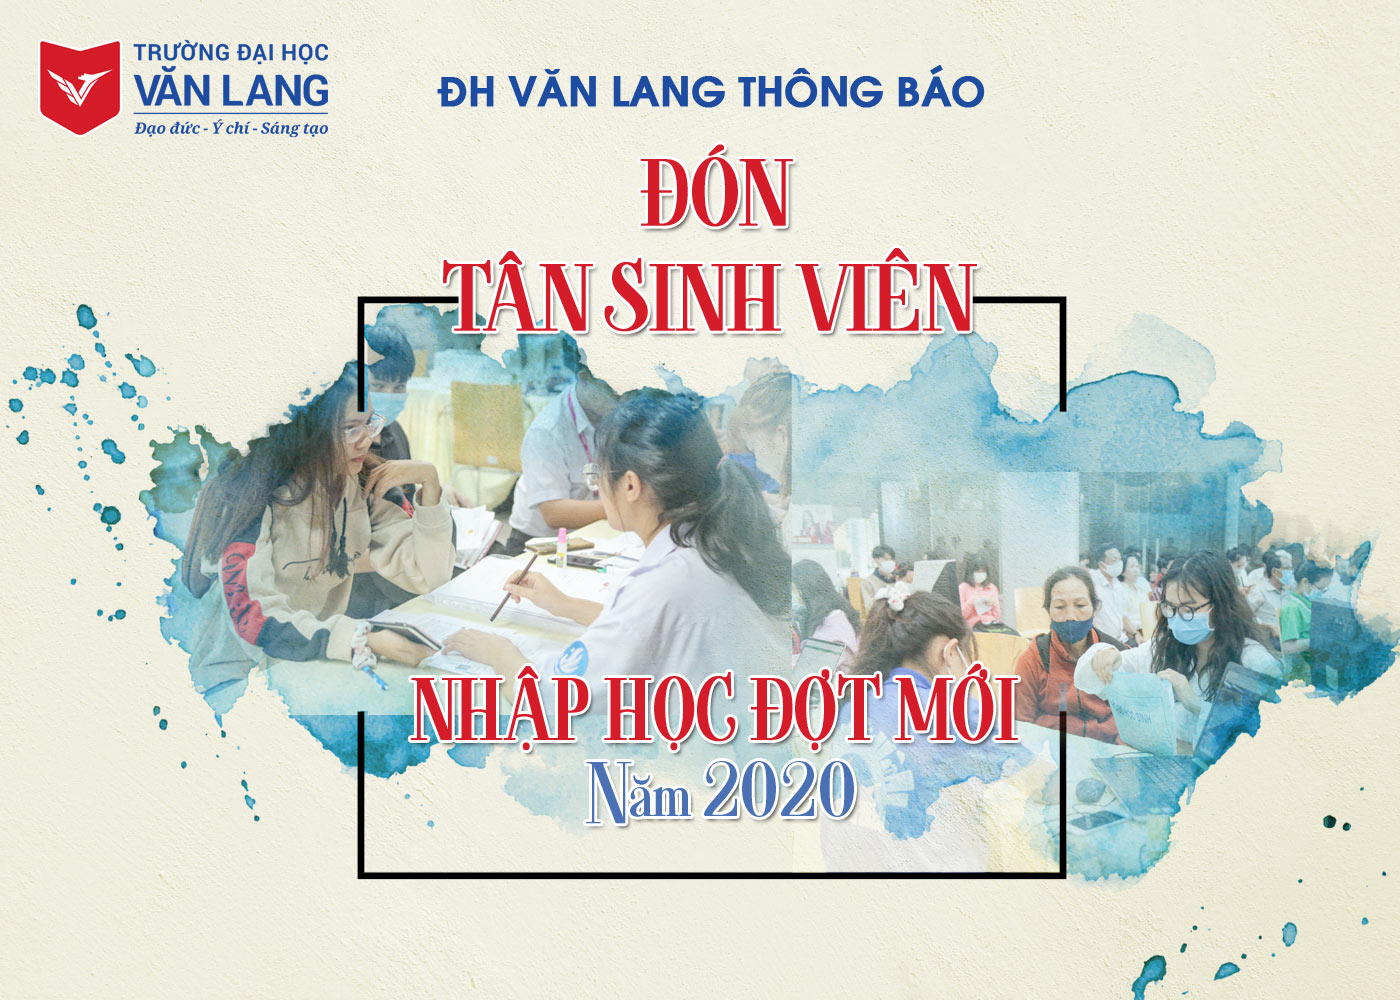 ĐH Văn Lang thông báo đón tân sinh viên nhập học đợt mới năm 2020 - Ảnh 1